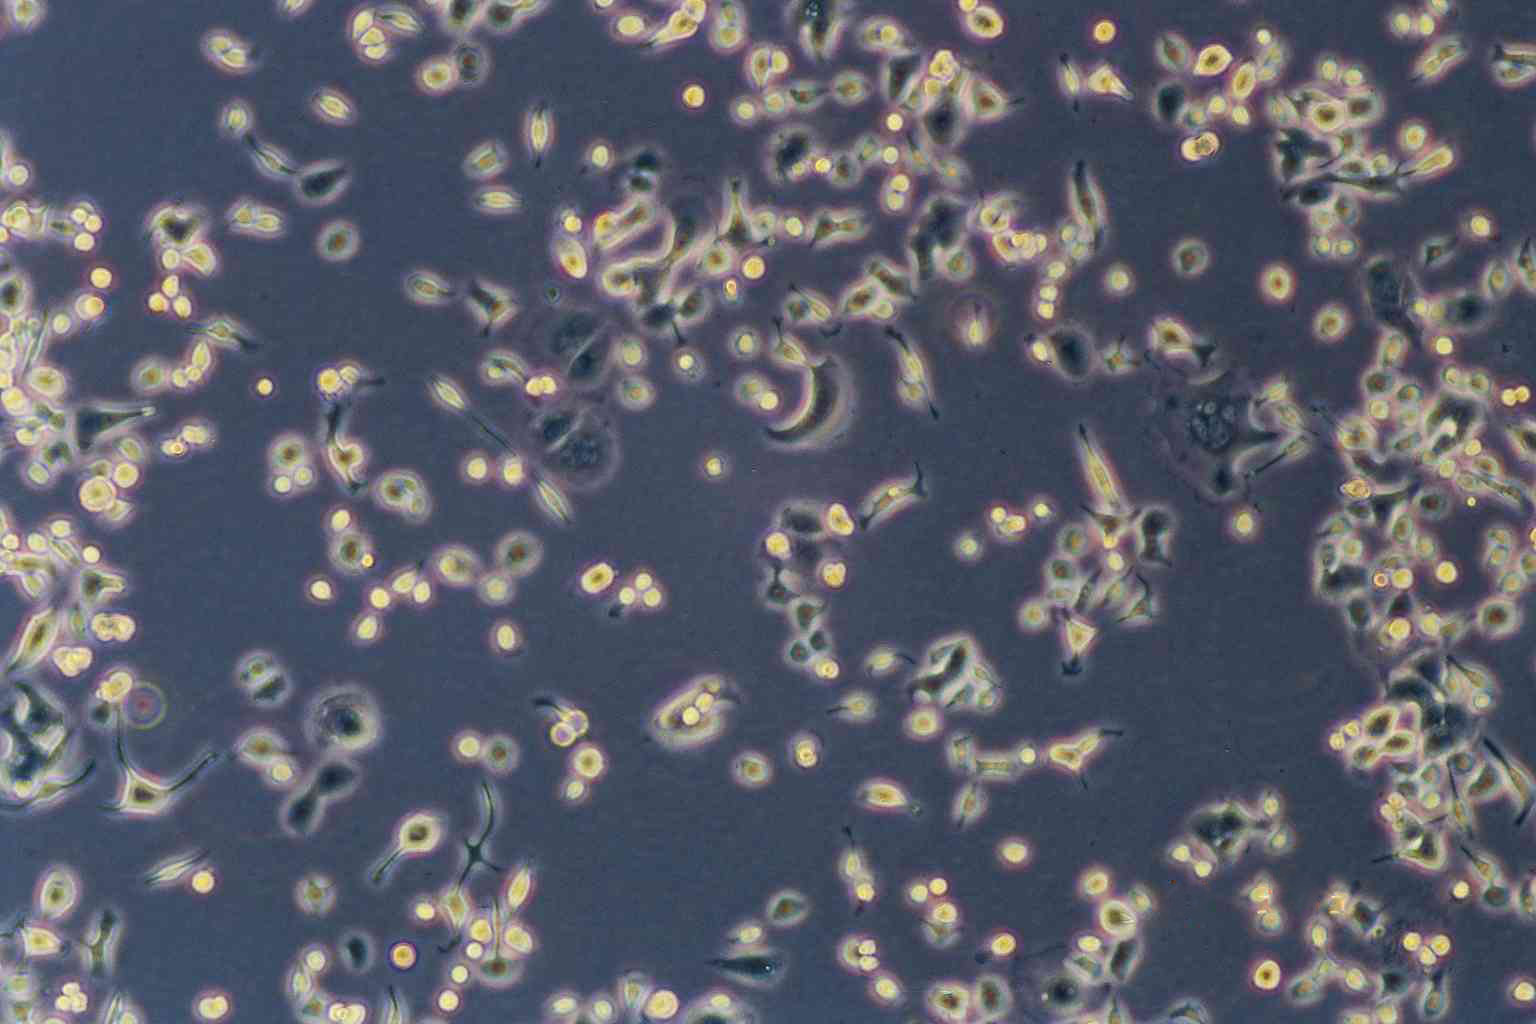 A-431 Fresh Cells|人皮肤鳞癌细胞(送STR基因图谱),A-431 Fresh Cells